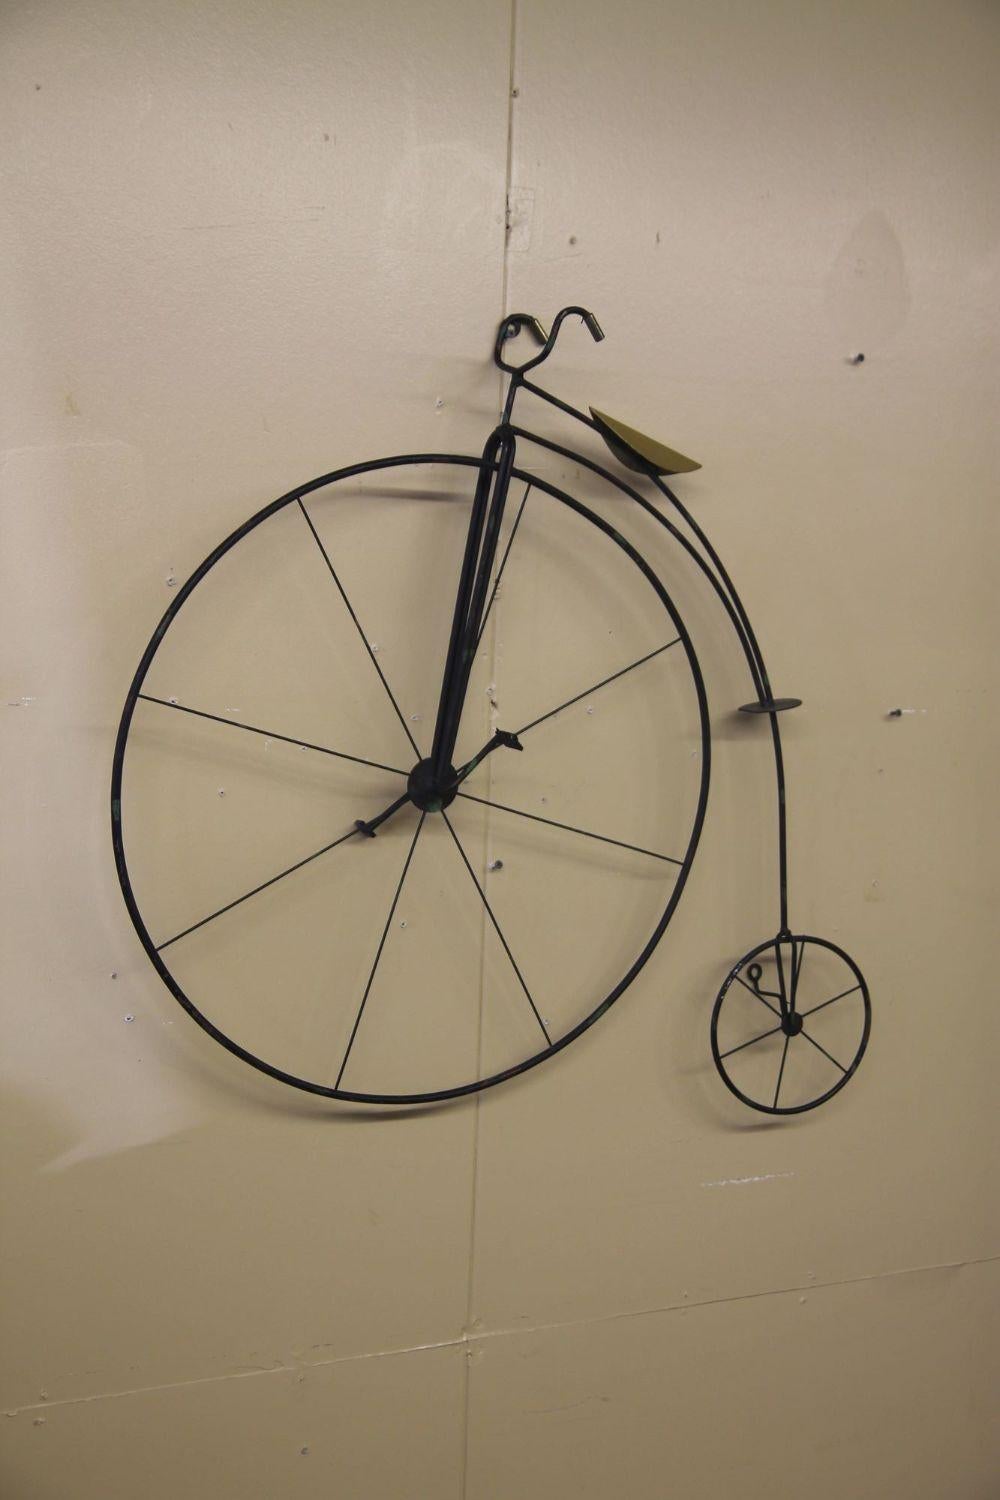 Wir freuen uns, Ihnen diese wandhängende Fahrradskulptur aus Metall von Curtis Jere anbieten zu können. Dieses Stück ist mit 1992 gekennzeichnet. Das schwarze Fahrrad hat einen schönen Messingsitz.